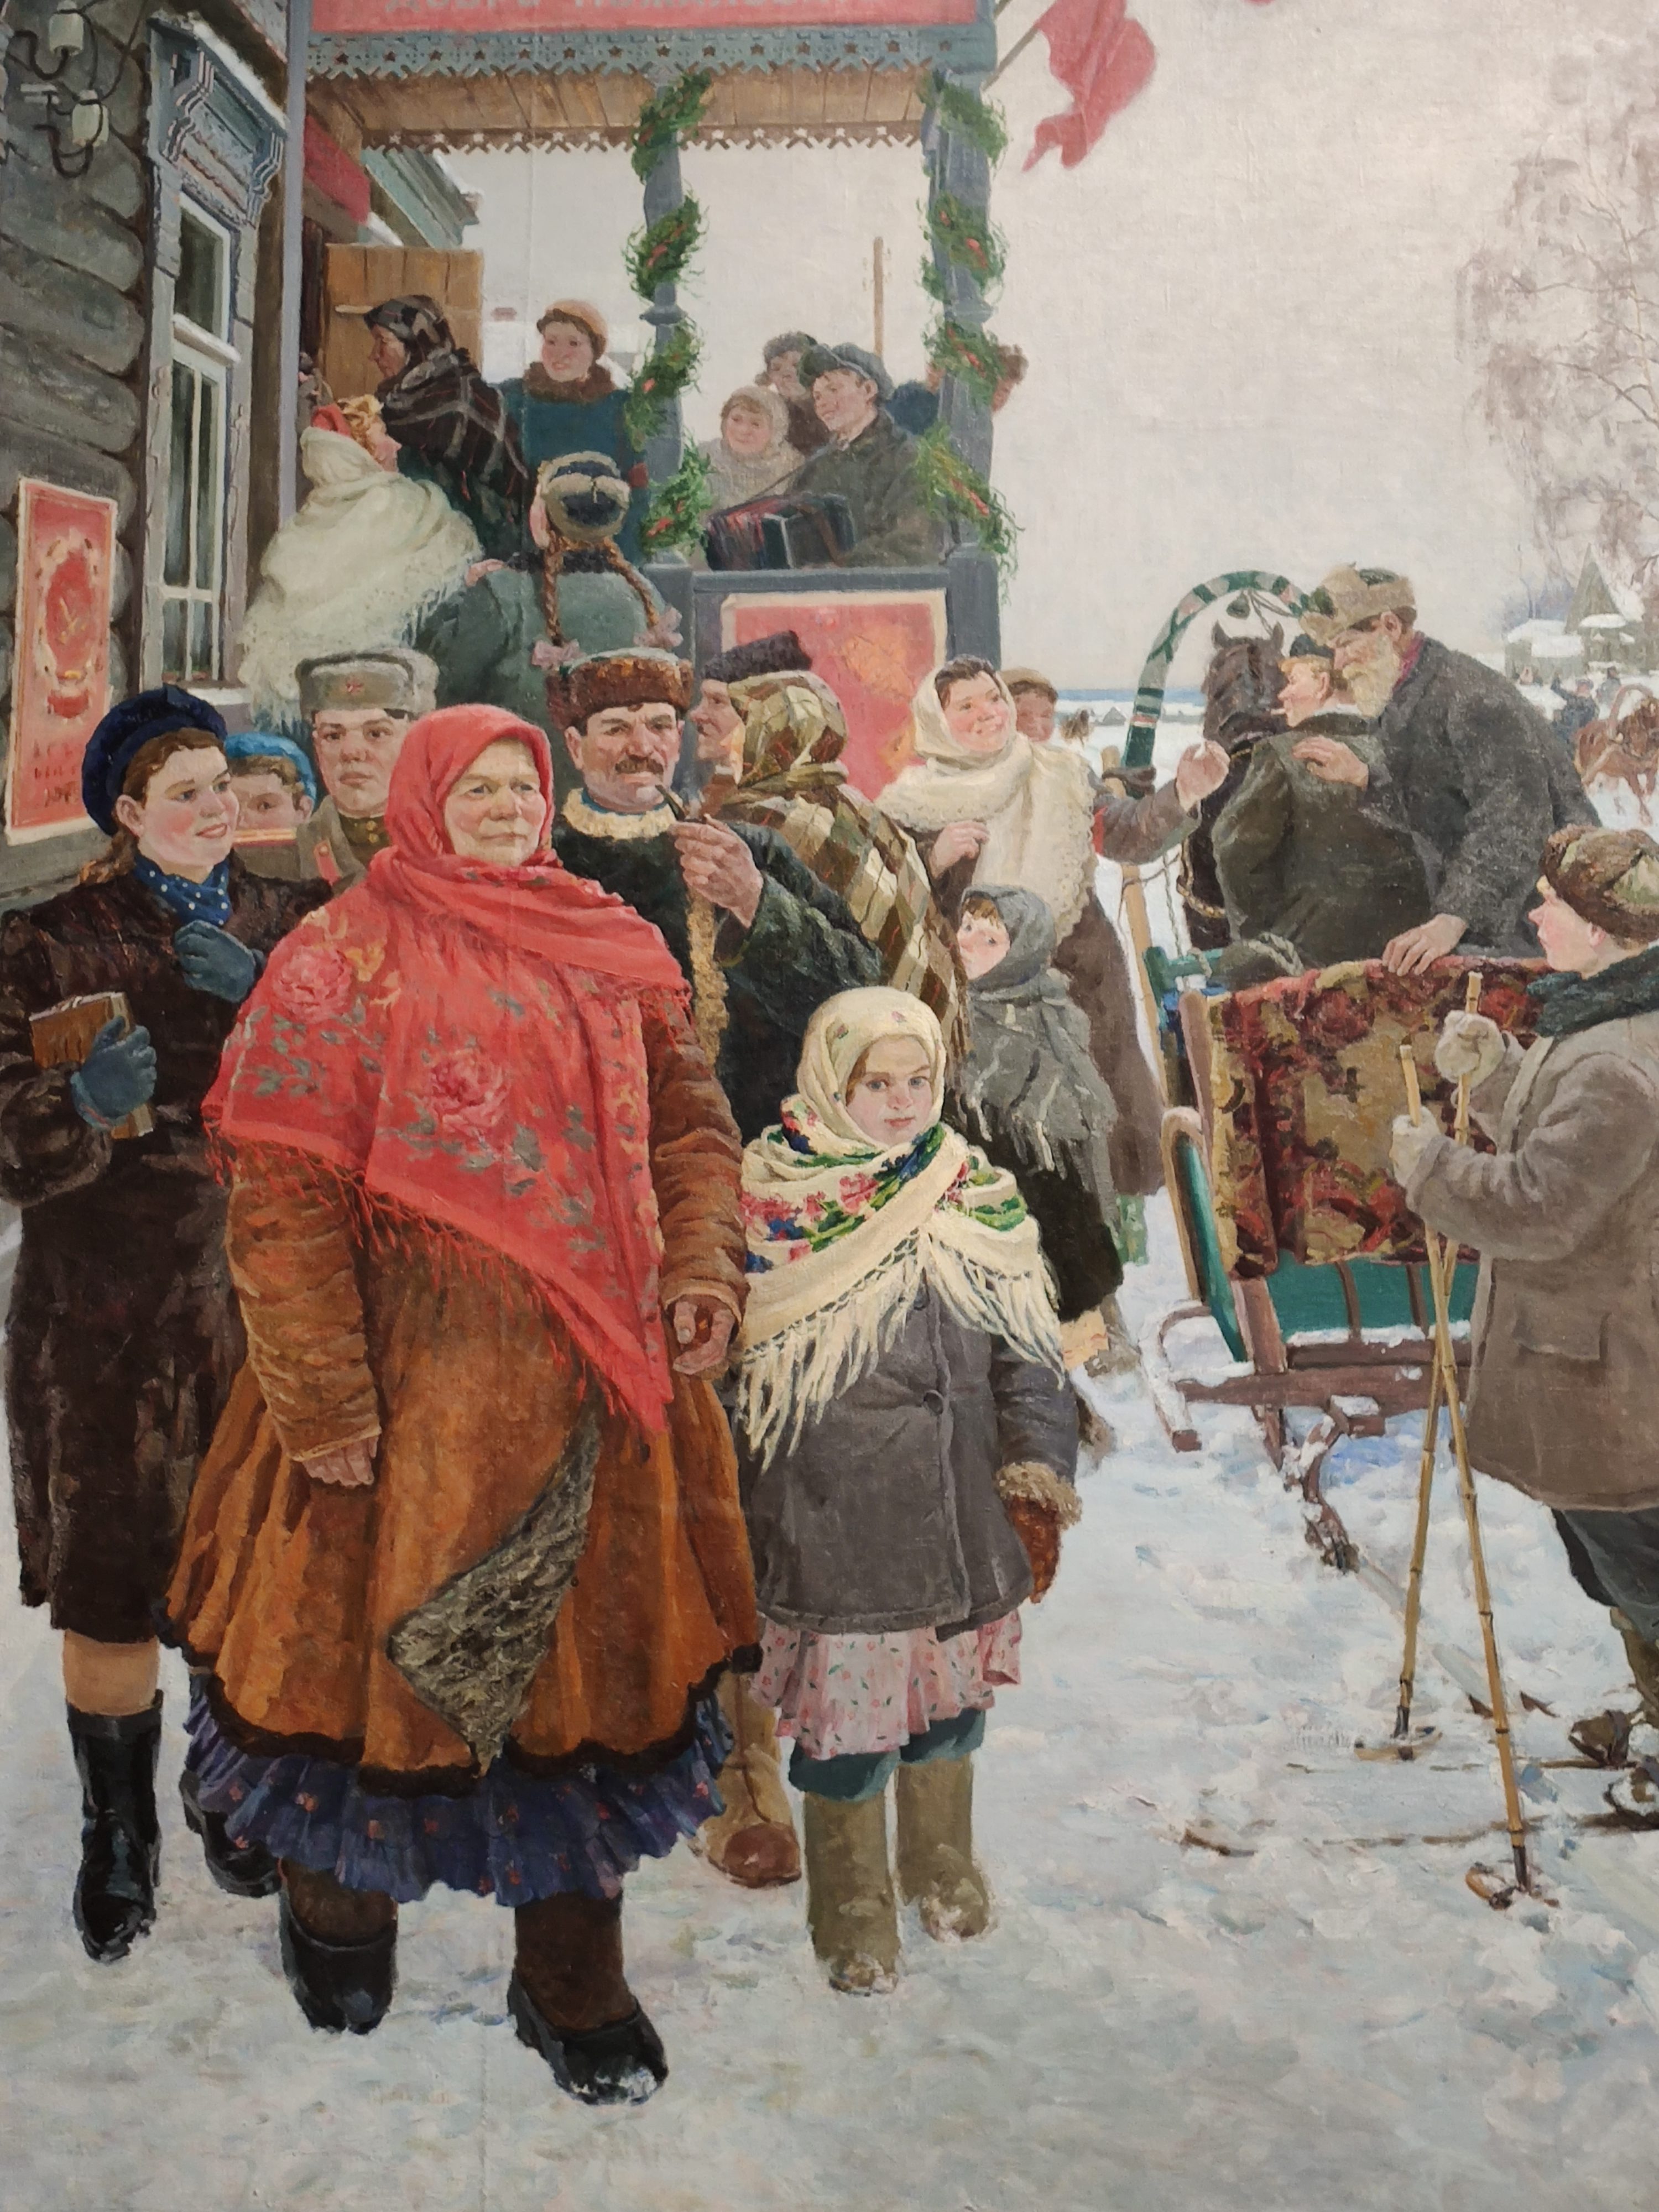  Mourmansk, porte de l'Arctique/ aufildeslieux.fr/ Alexander Volkov/ Day of Elections of the Supreme Soviet of the USSR 1949 © K.Hibbs